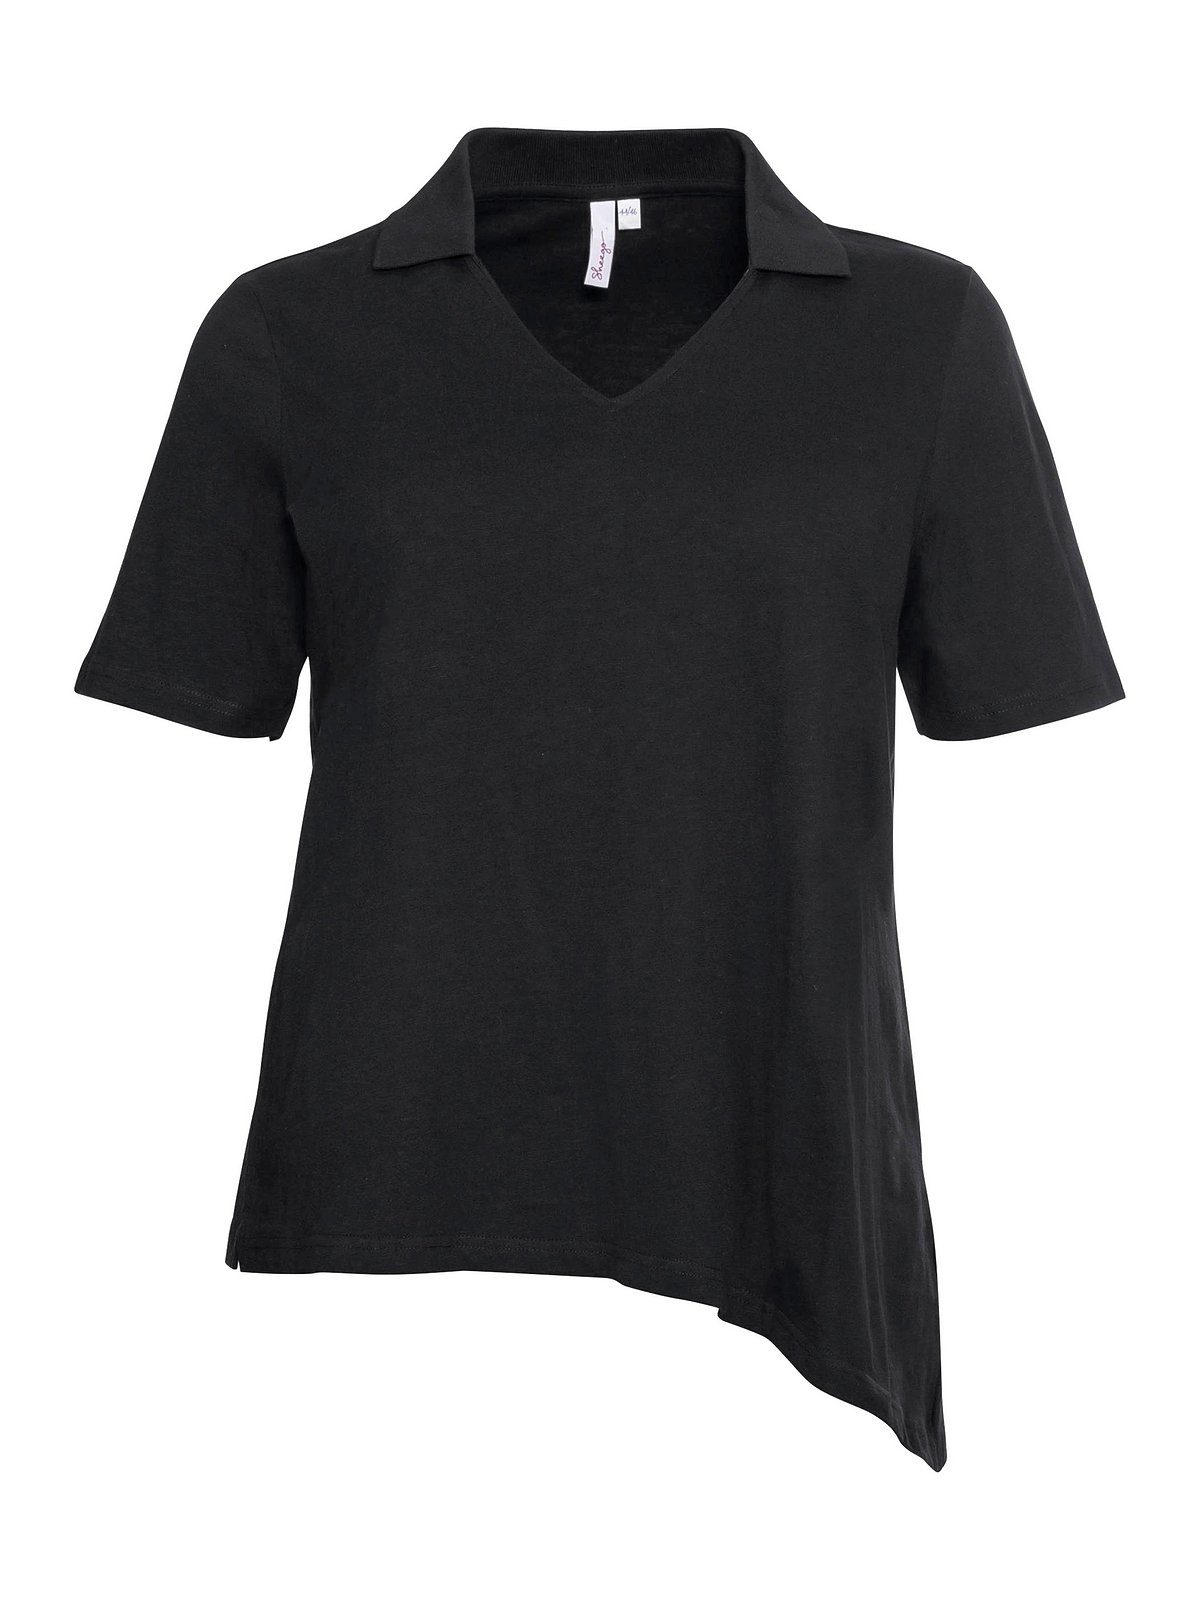 Saum Polokragen mit T-Shirt schwarz Größen asymmetrischem Große Sheego und